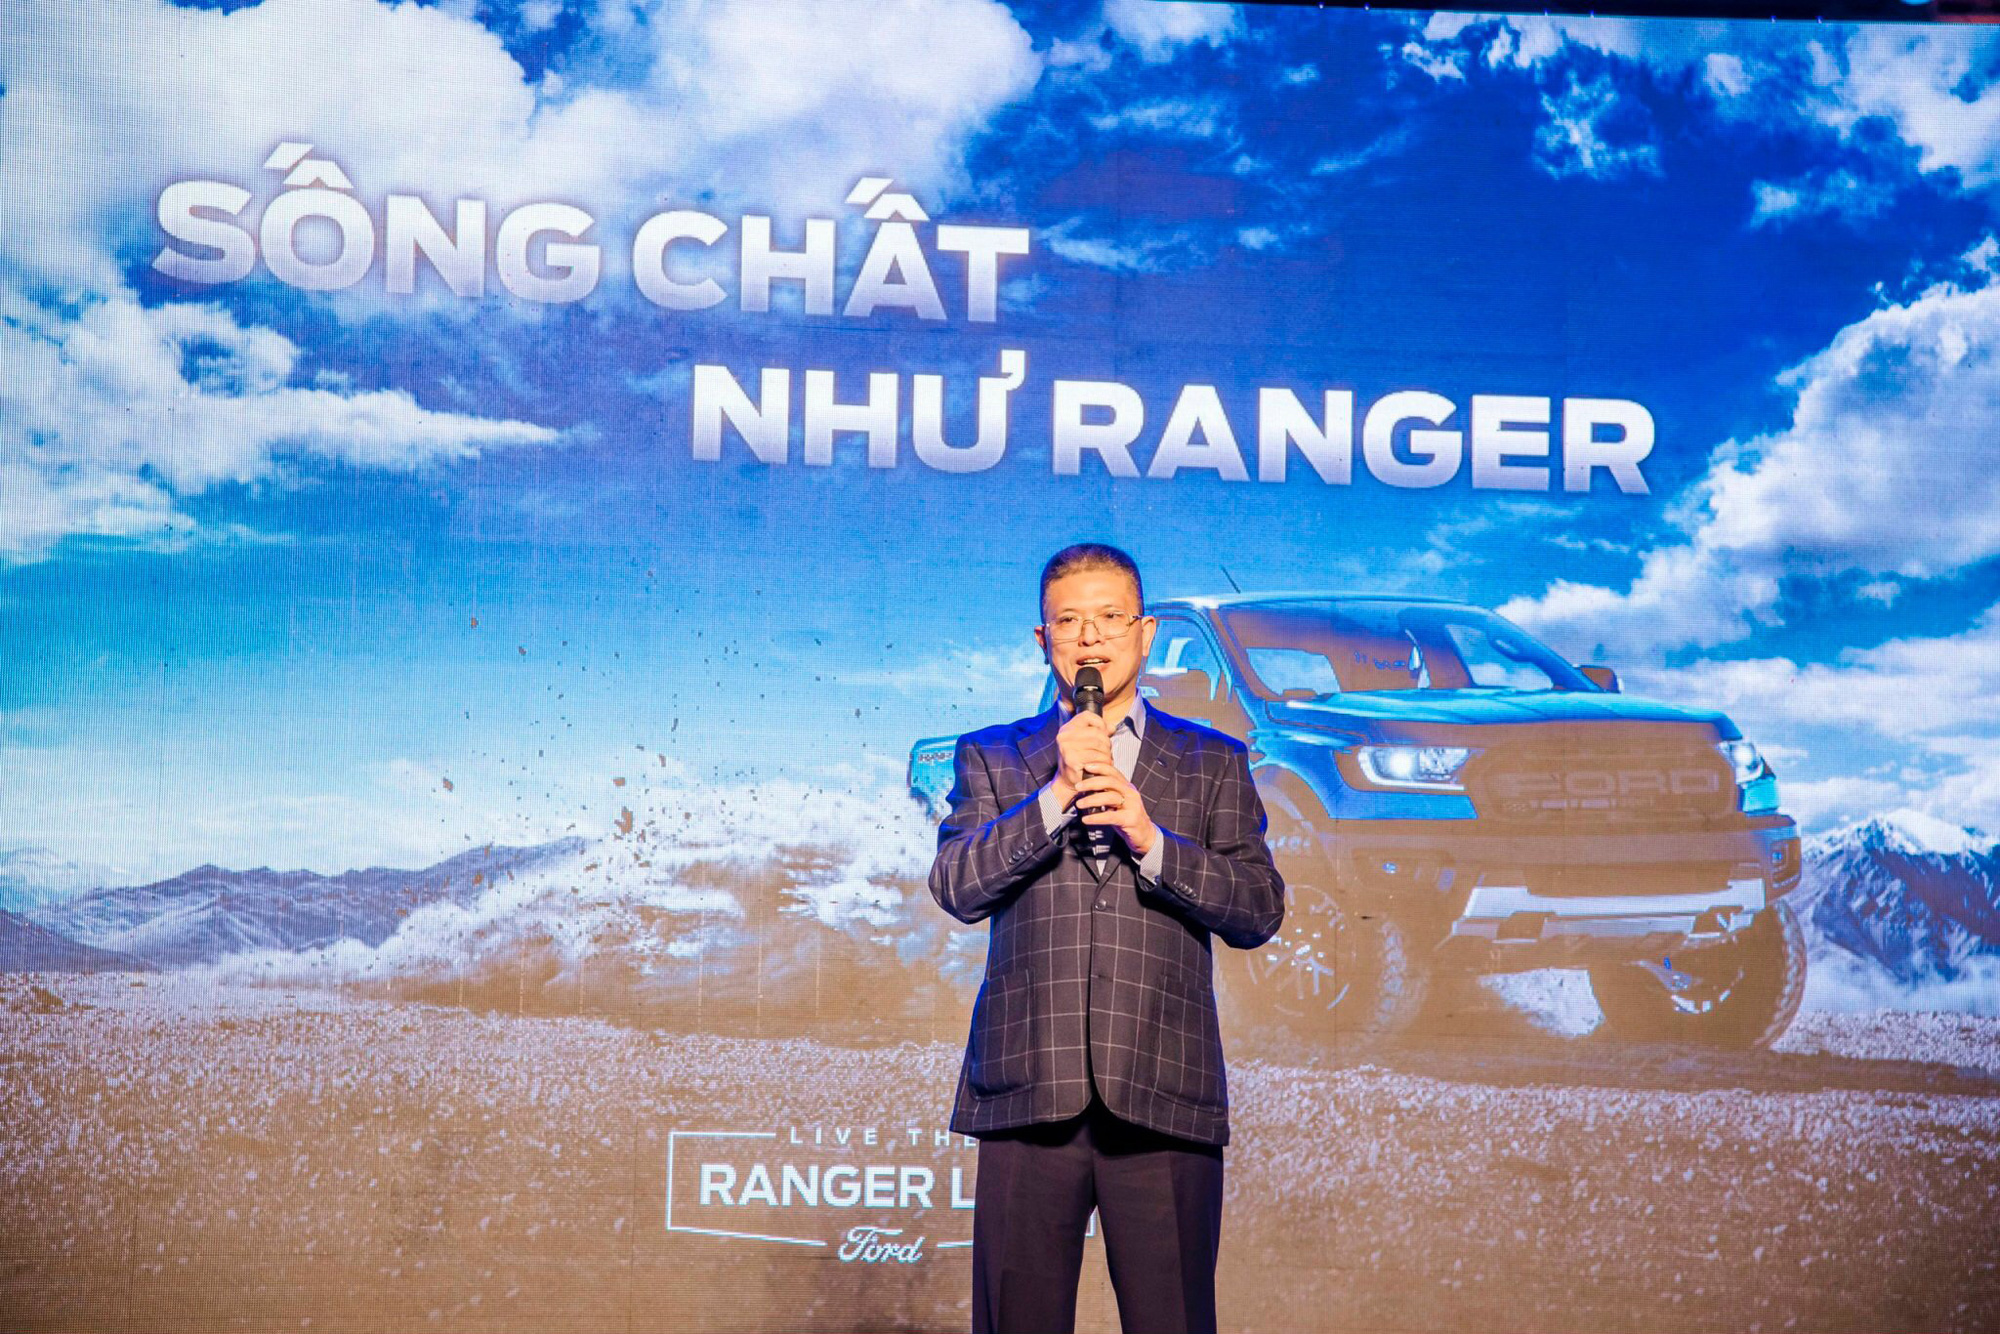 Live The Ranger Life - bán một chiếc xe, tặng cả hành trình - Ảnh 1.